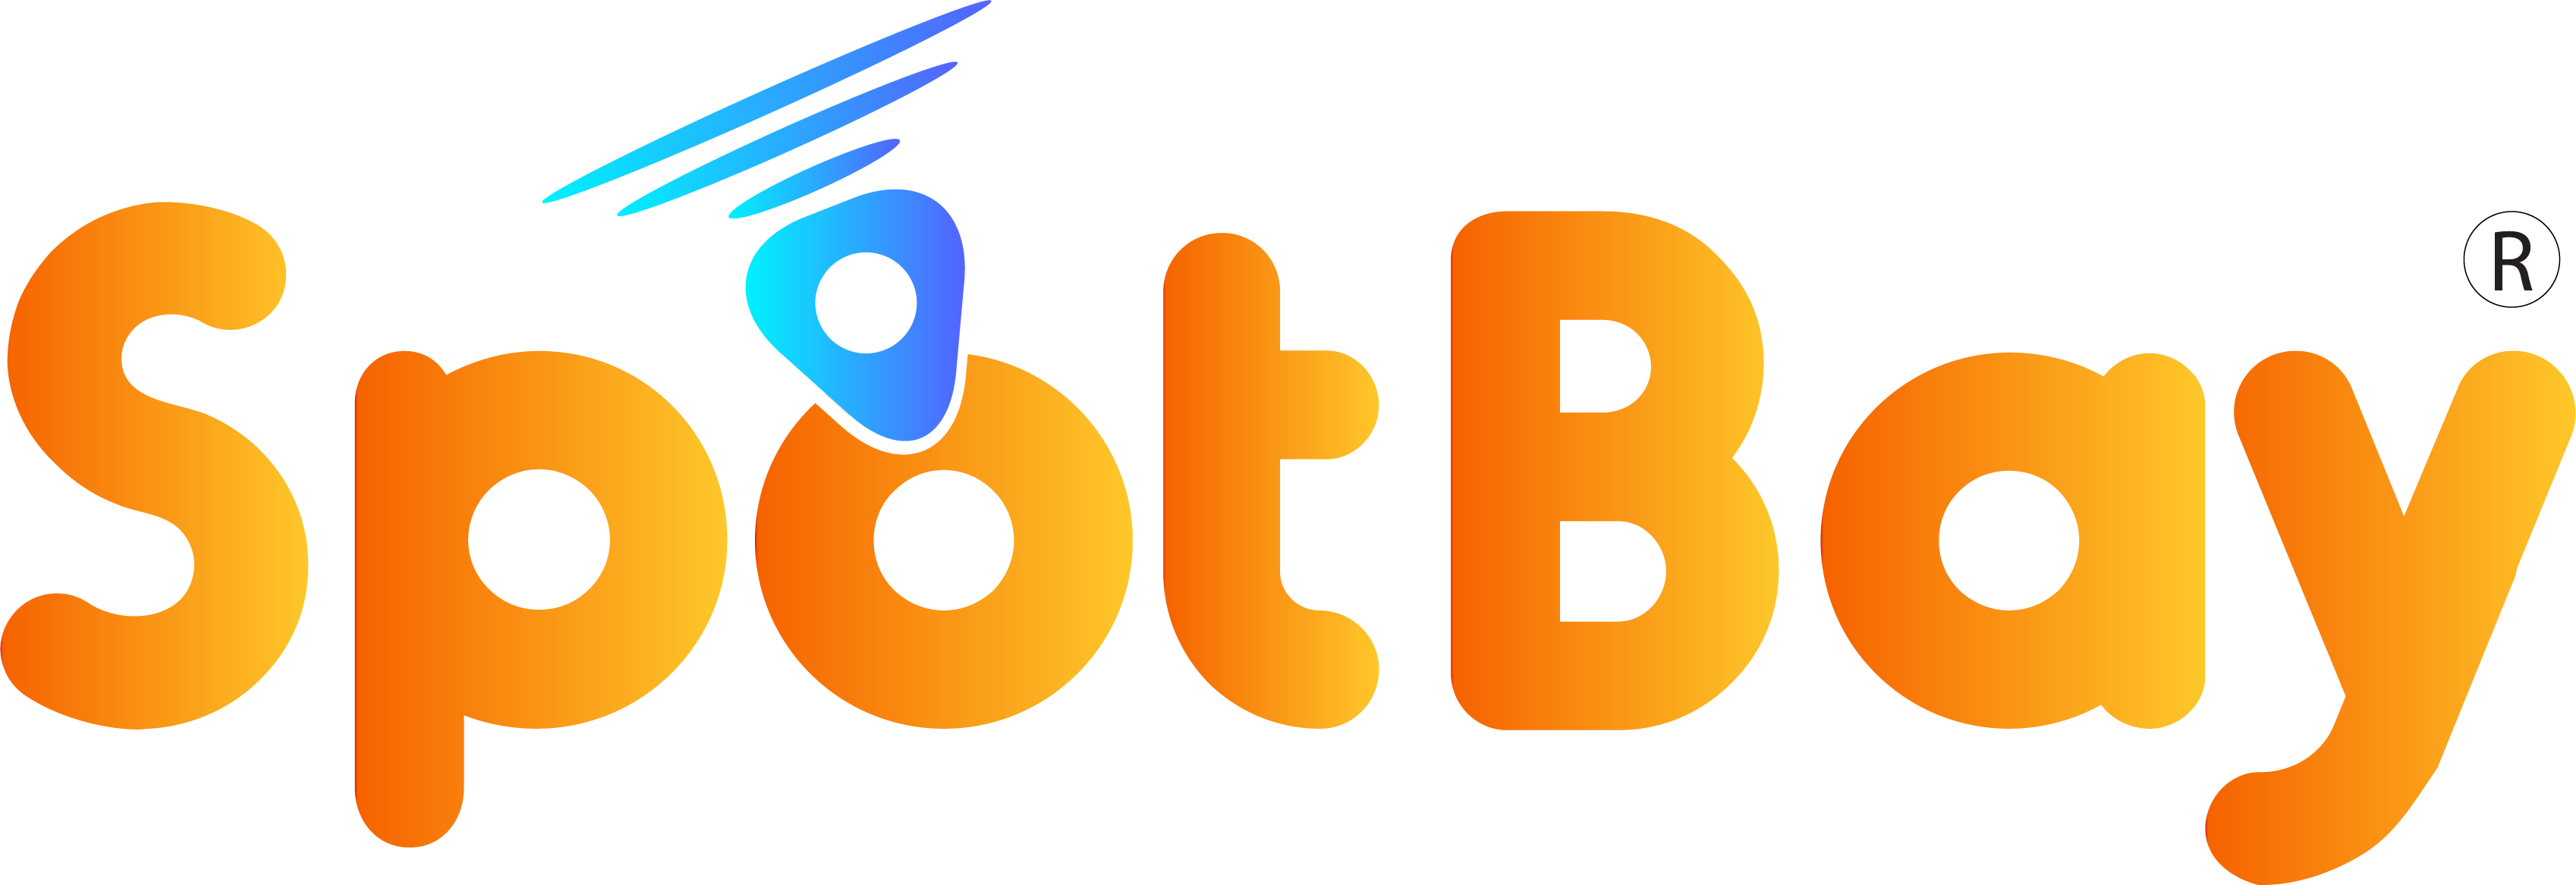 SpotBay Logo New